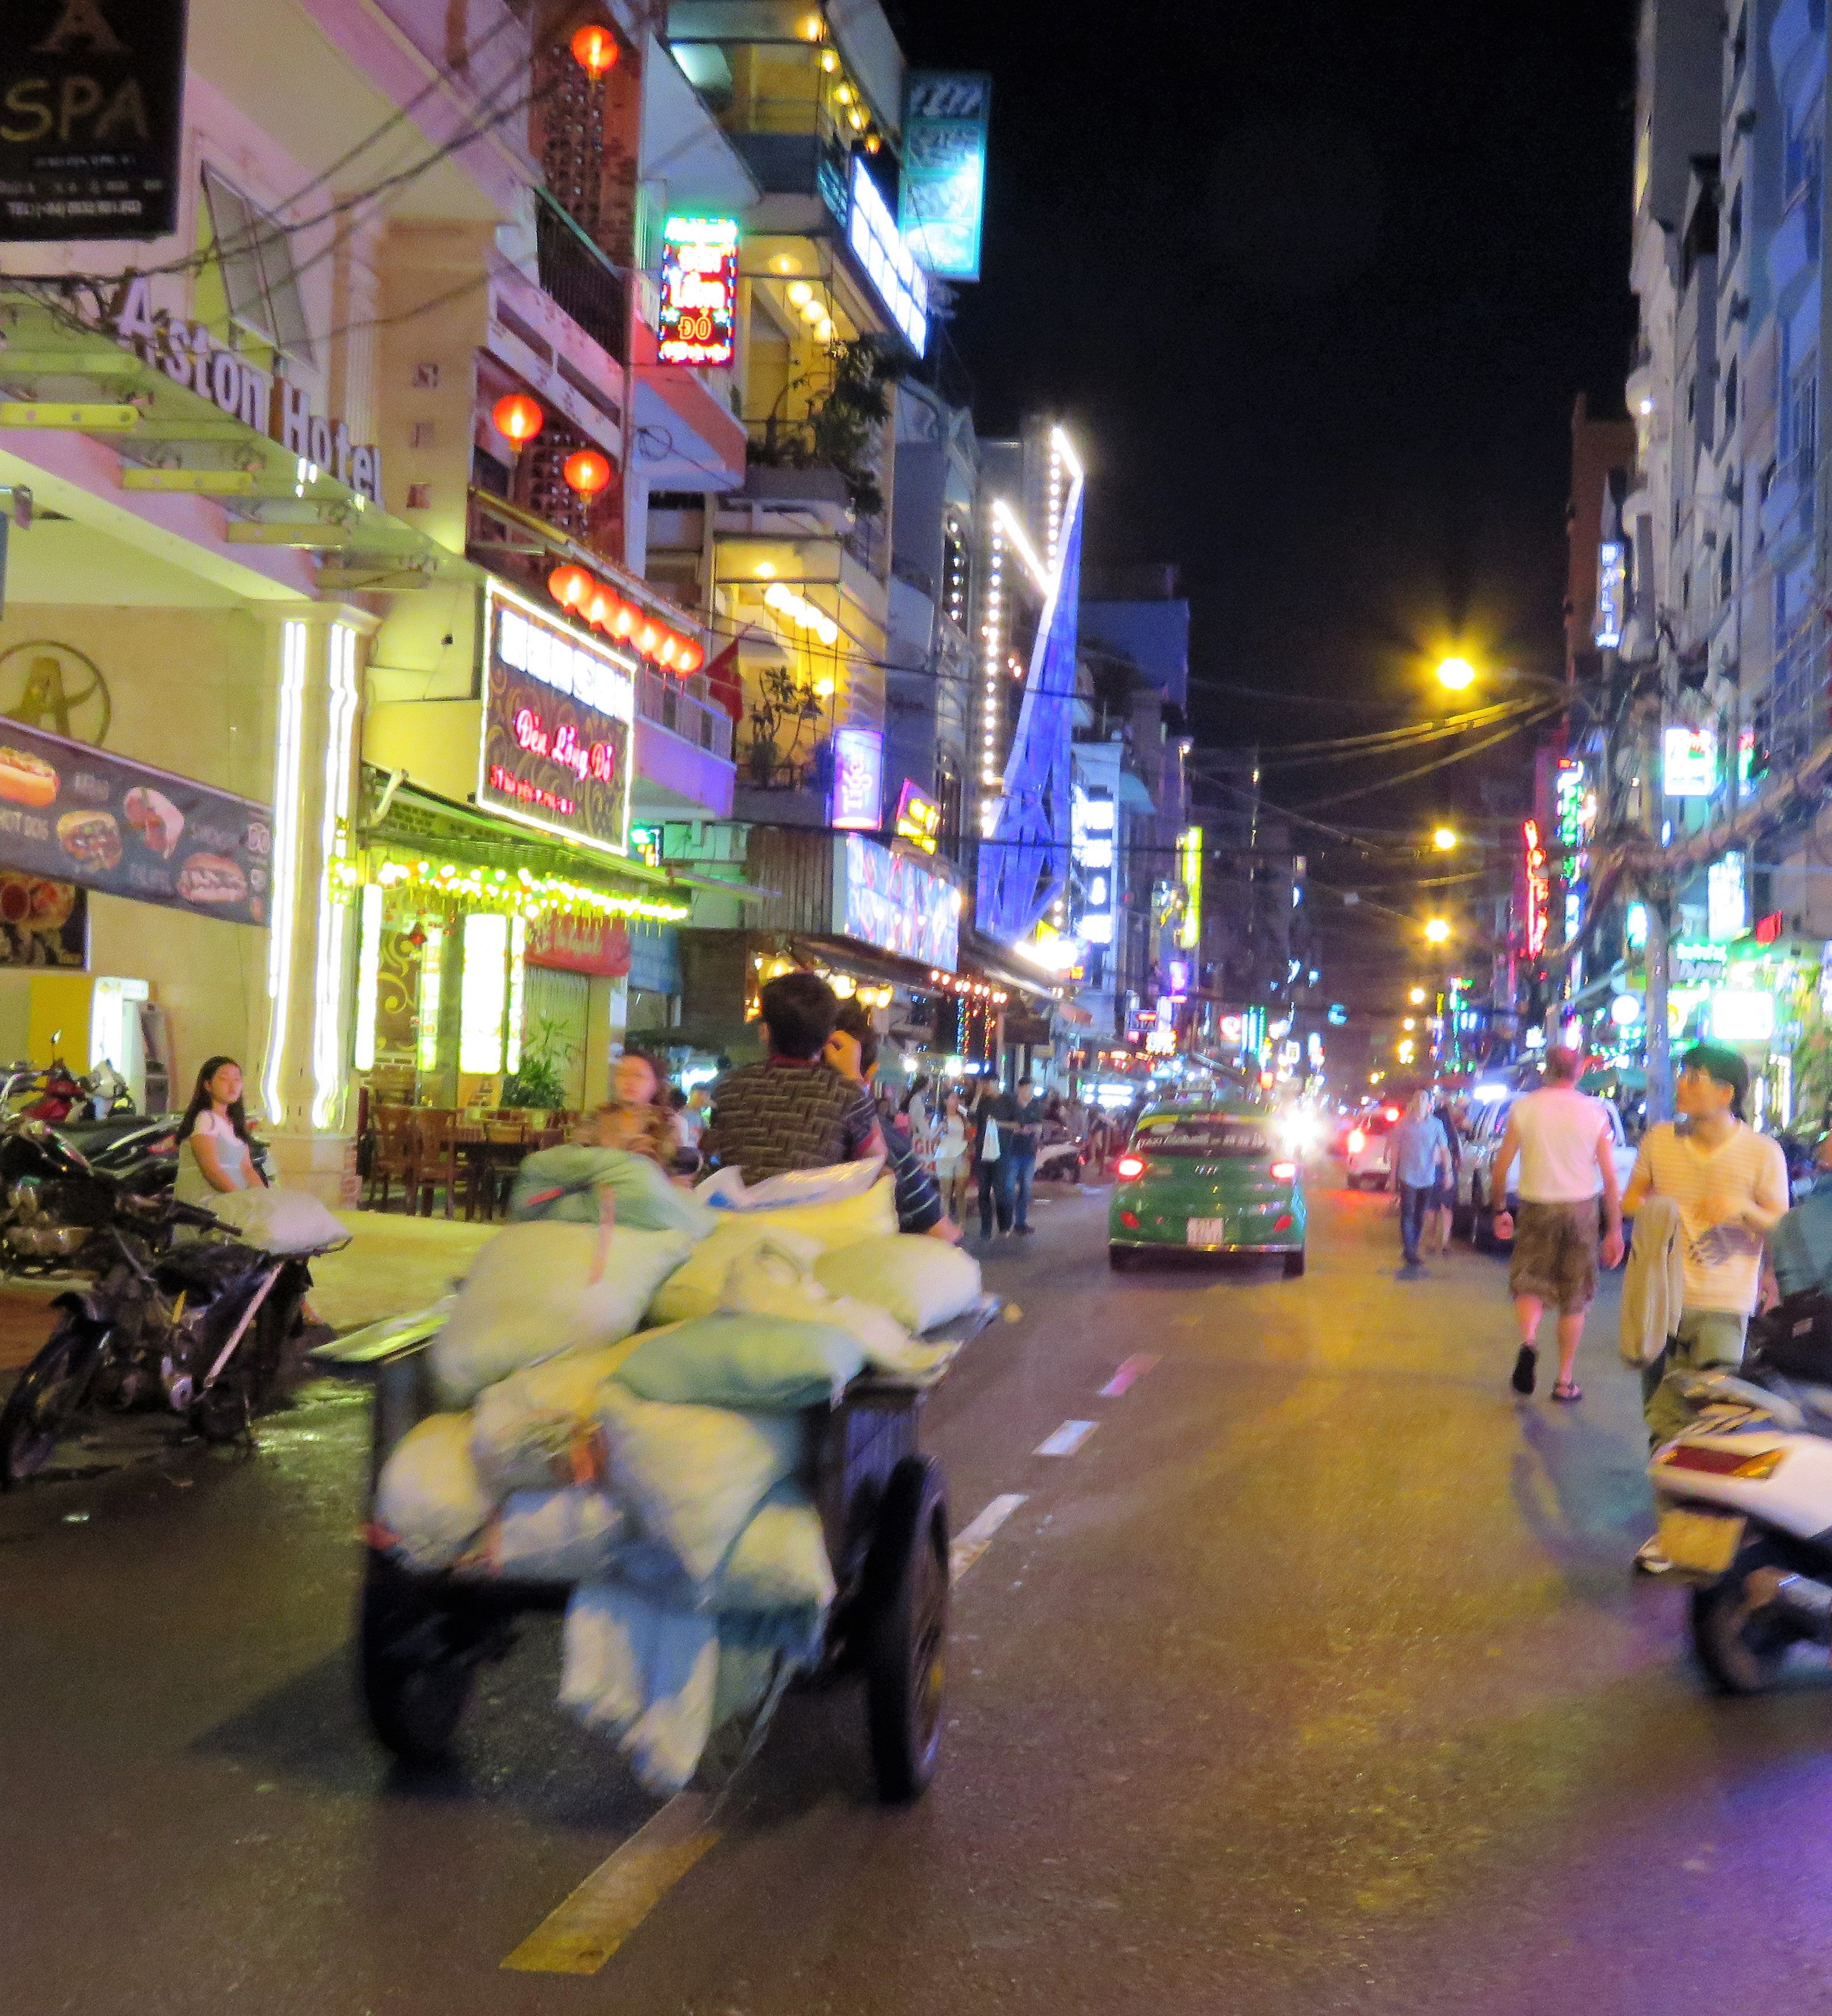 The Sights of Saigon